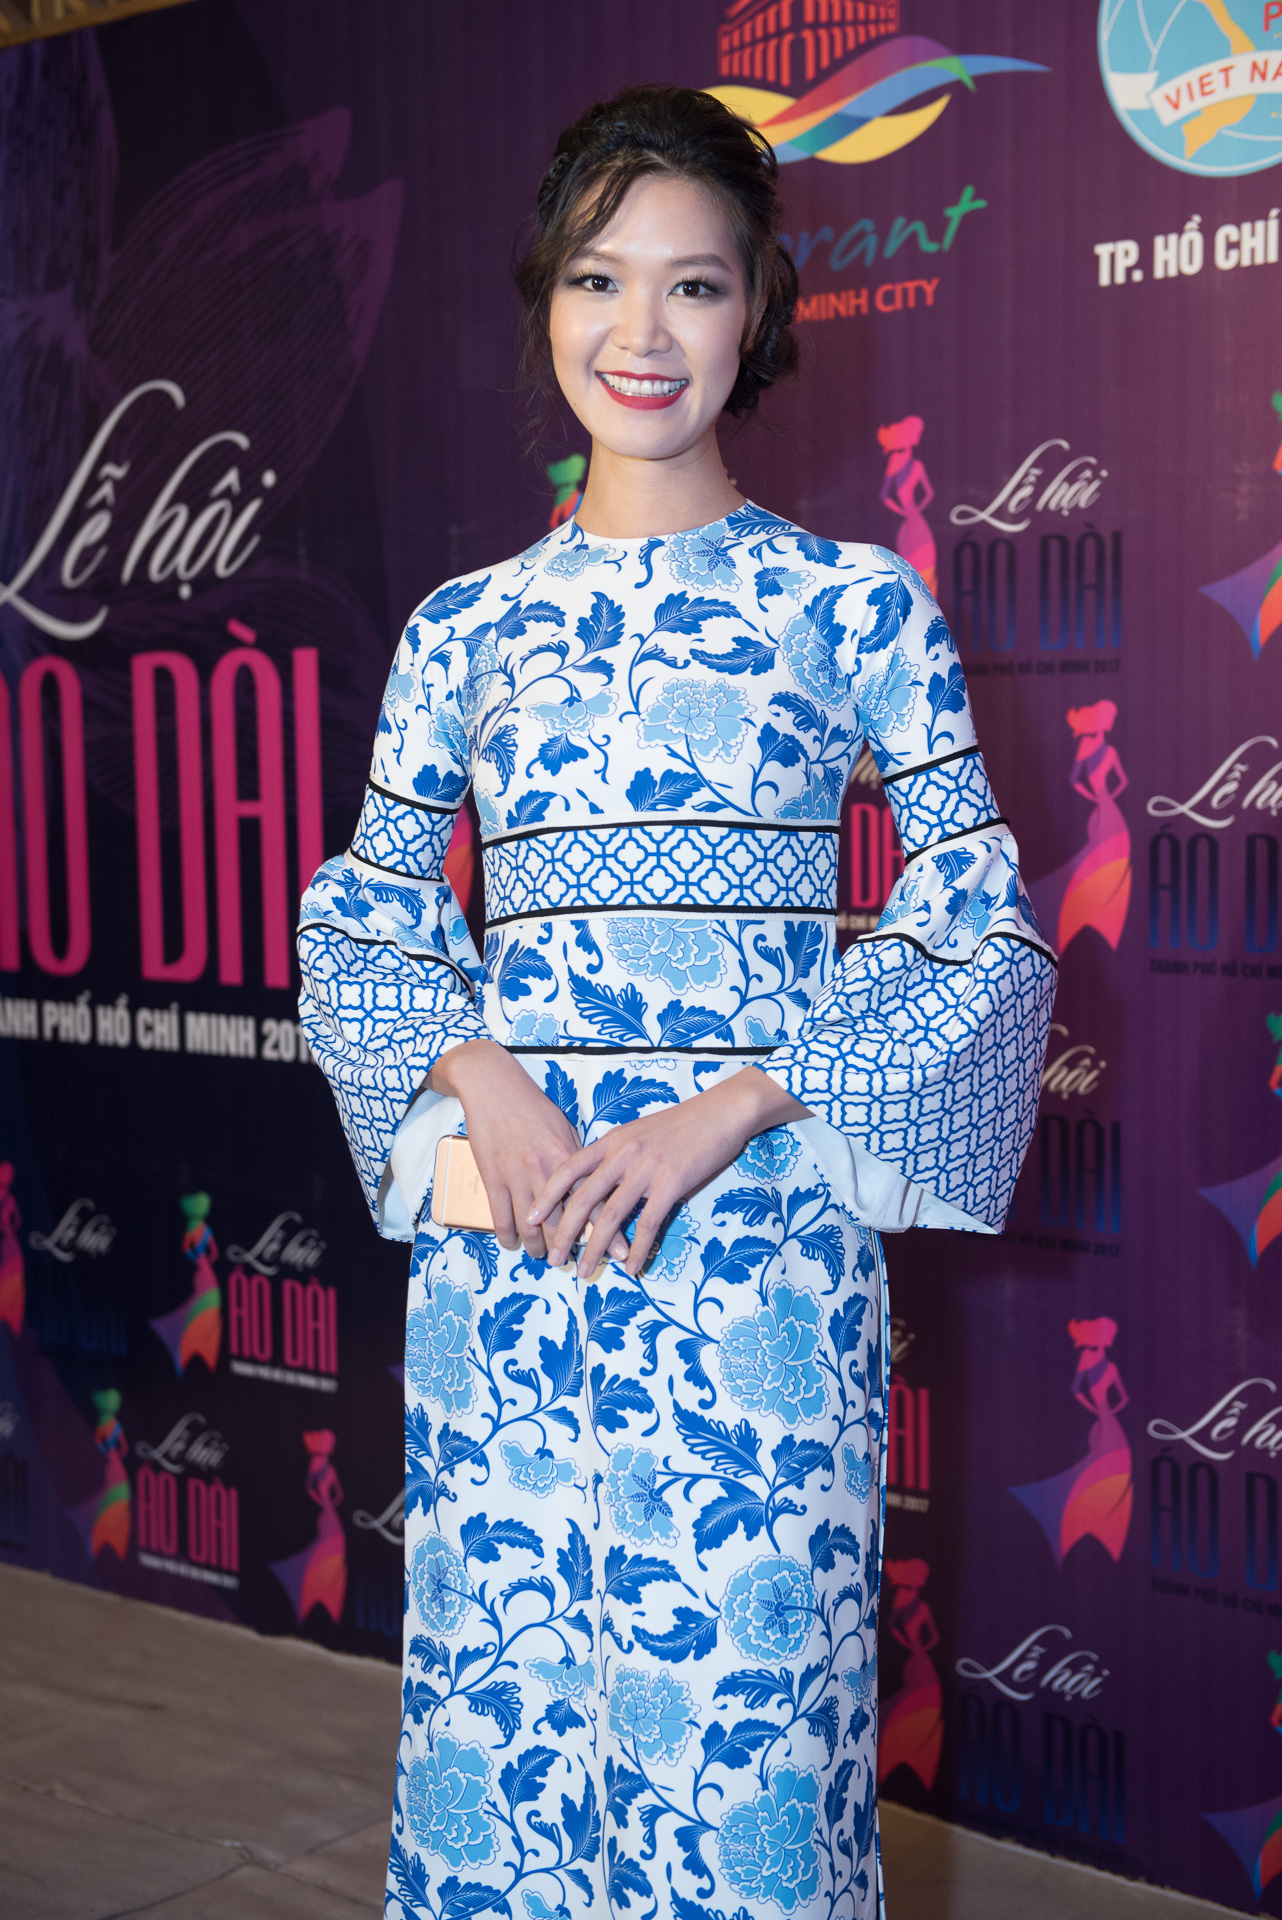 Hoa hậu Thùy Dung lạ mắt trong chiếc áo dài họa tiết 